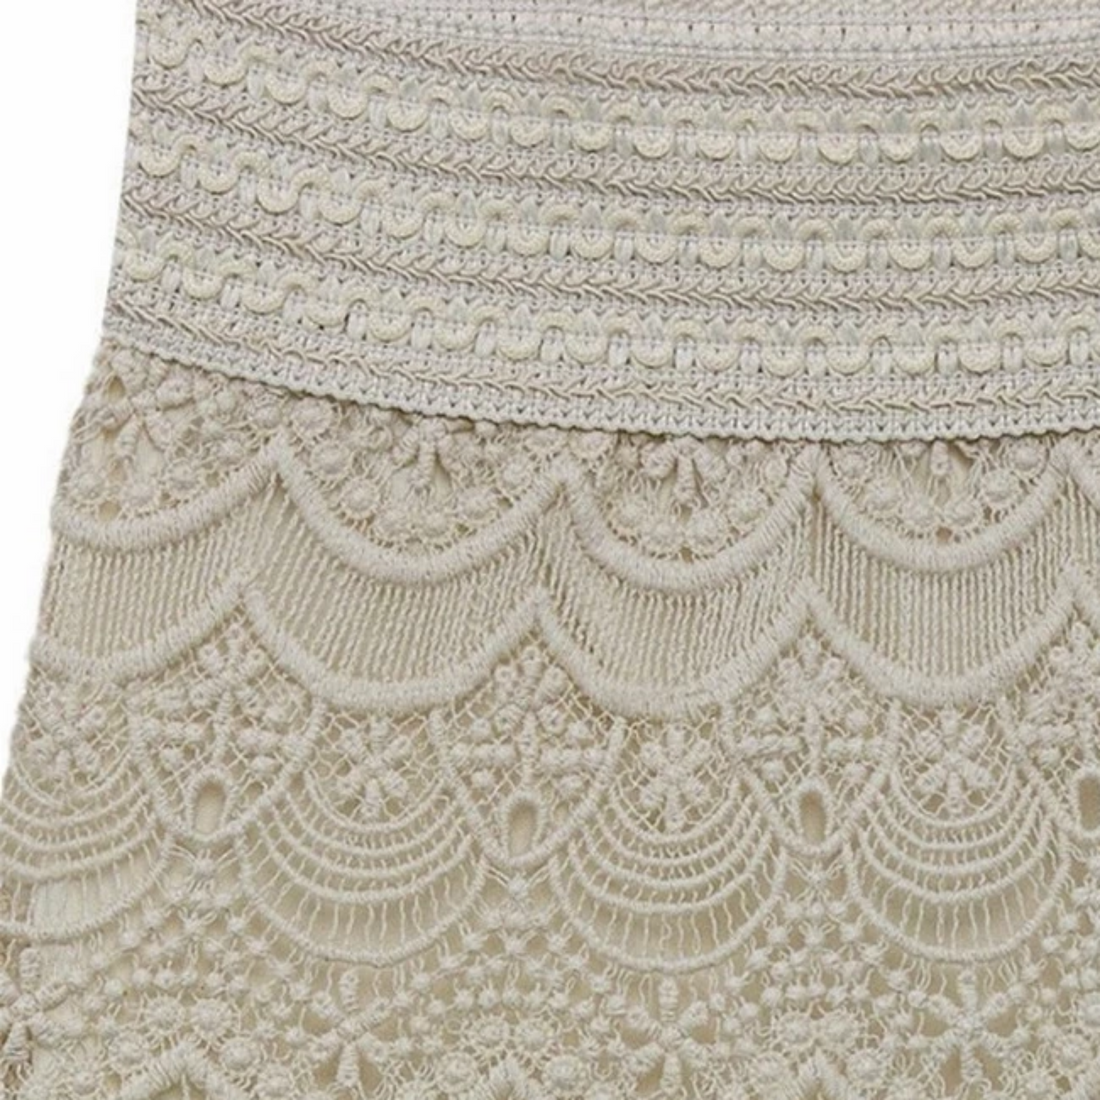 Women's Lace High-Waist Bodycon Skirt